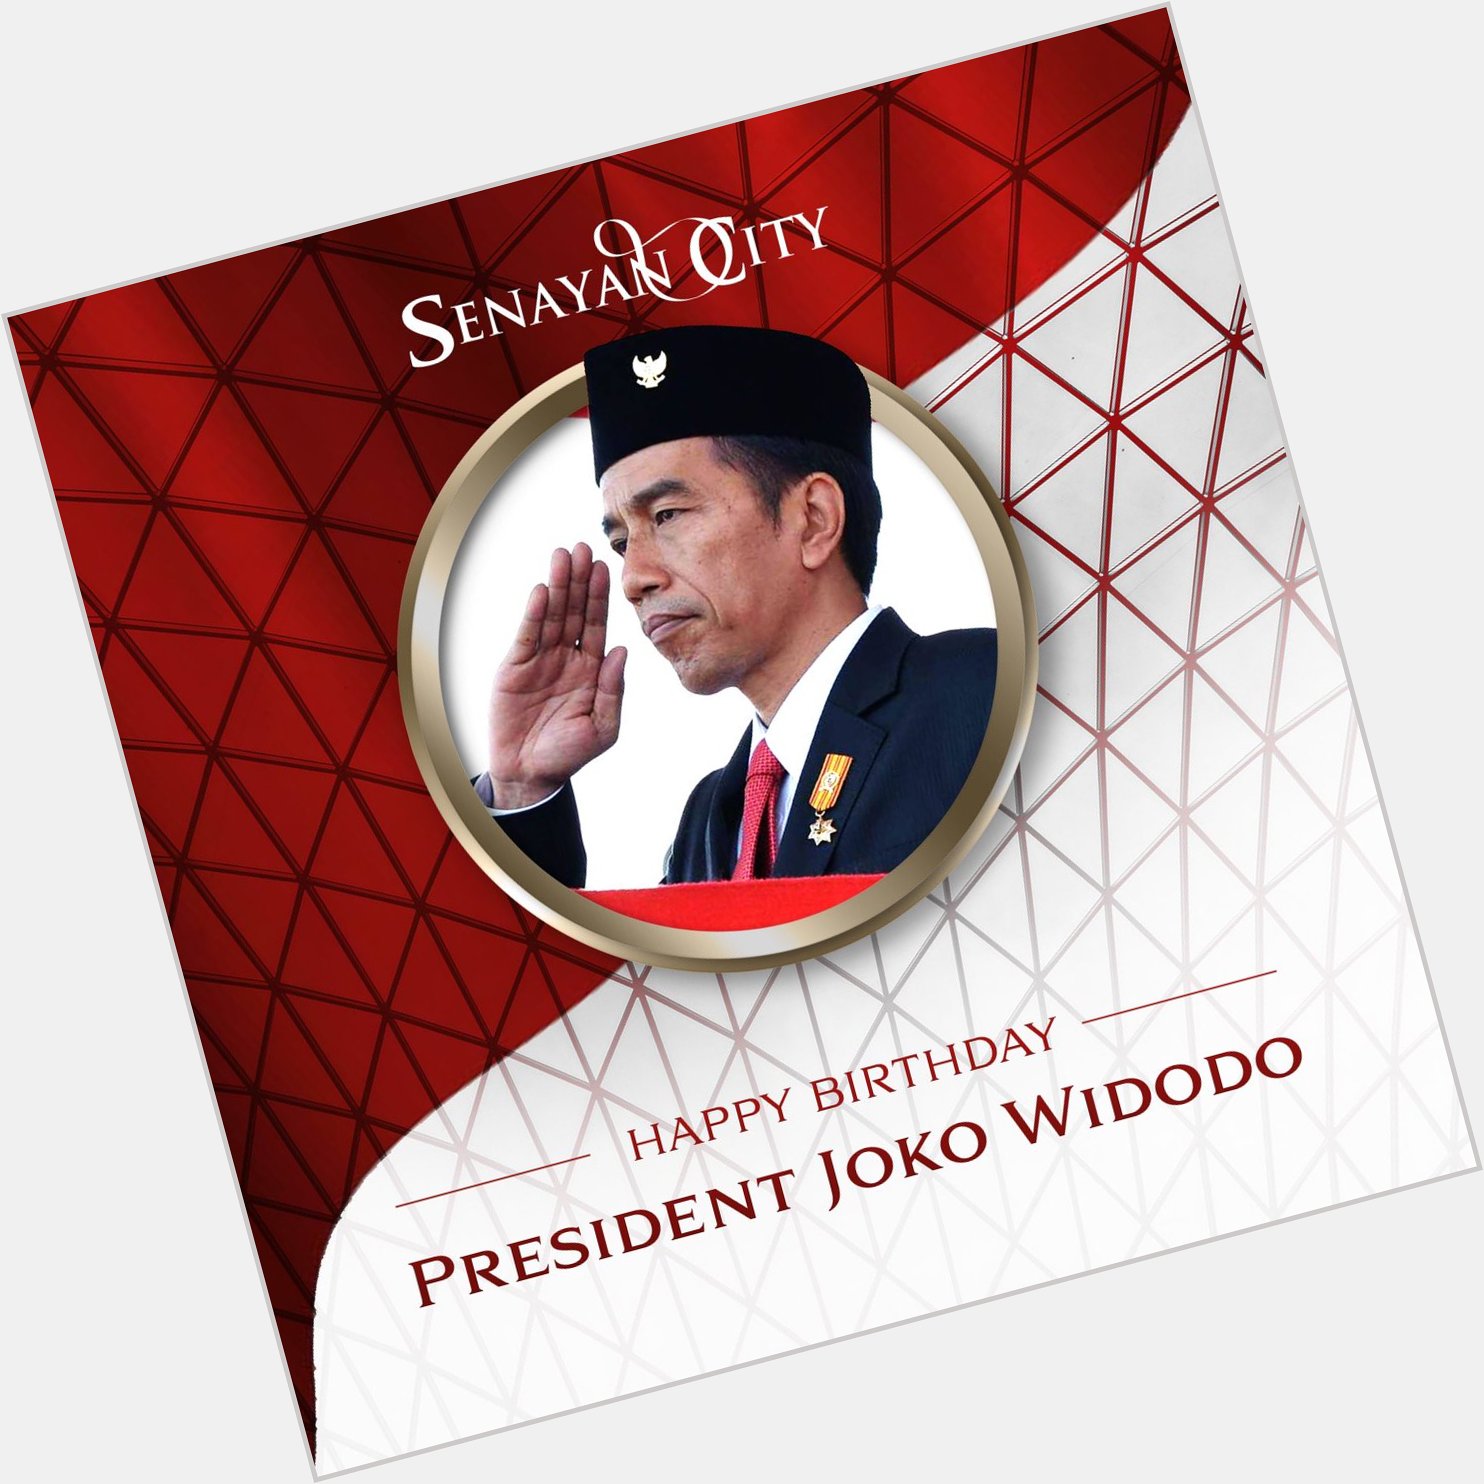 Happy Birthday to Our President - Joko Widodo. 